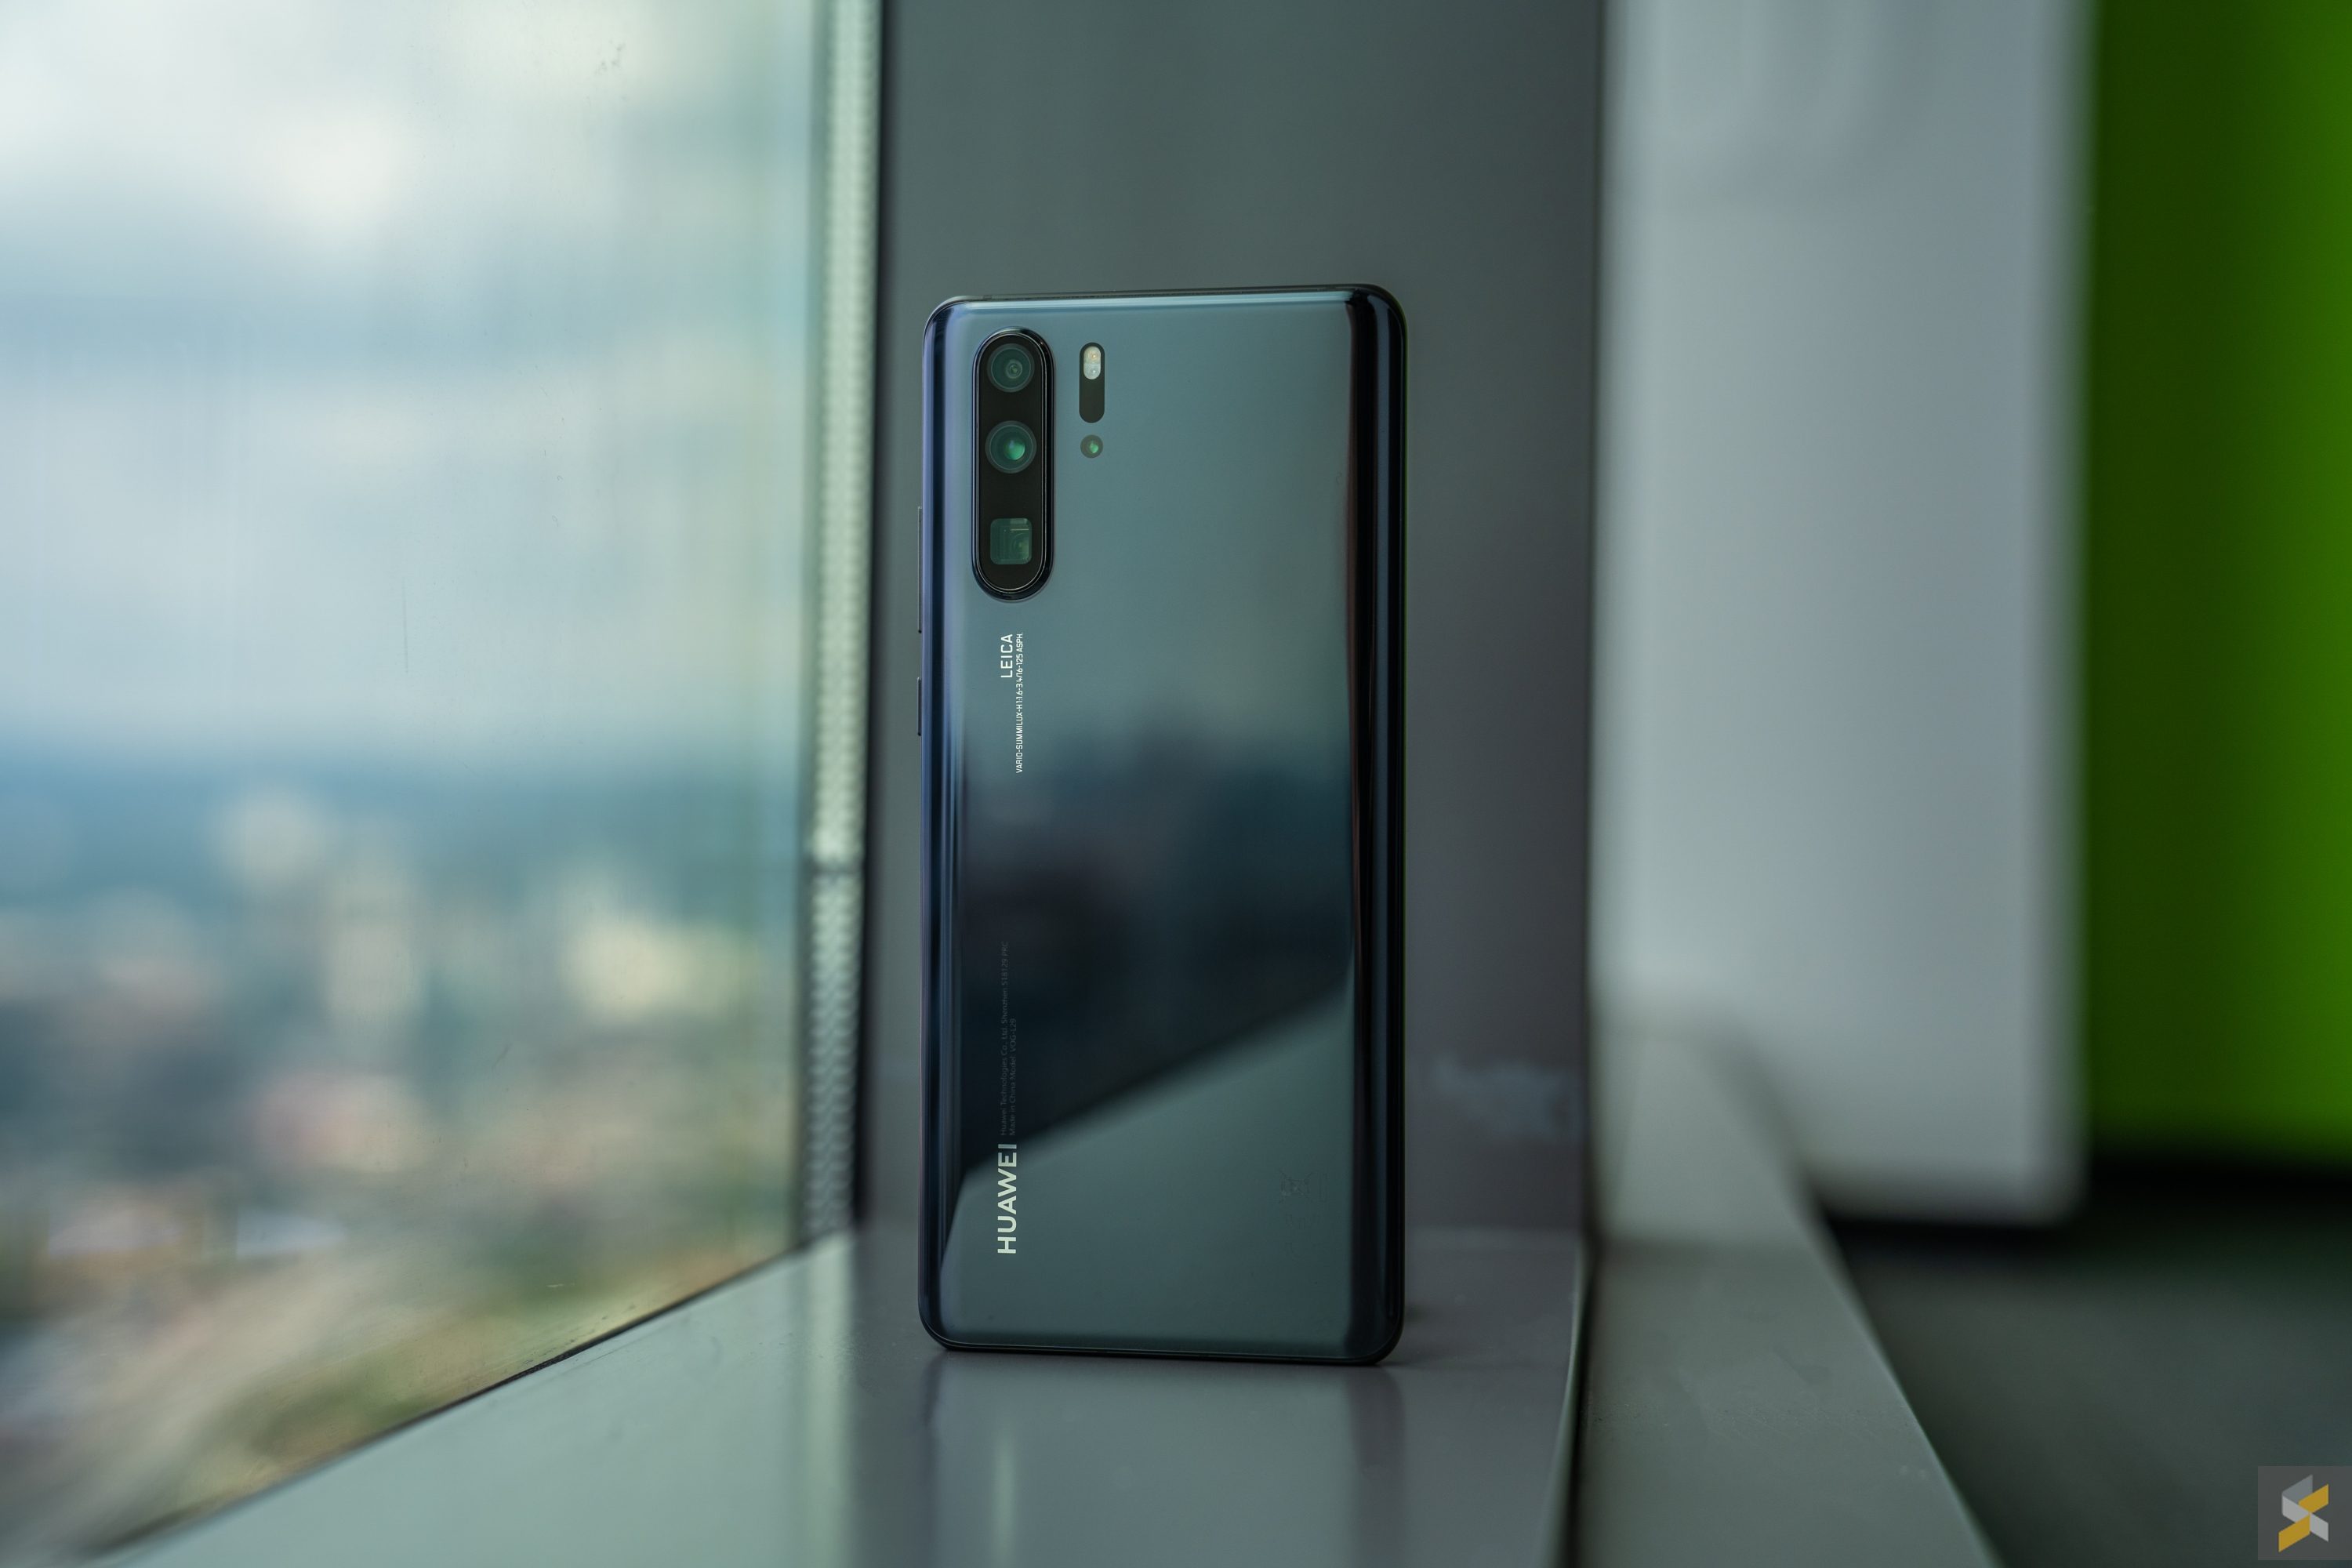 Tuần này có gì: Huawei P30 Series và Realme 3 ra mắt thị trường Việt, Acer giới thiệu dòng Swift series 2019